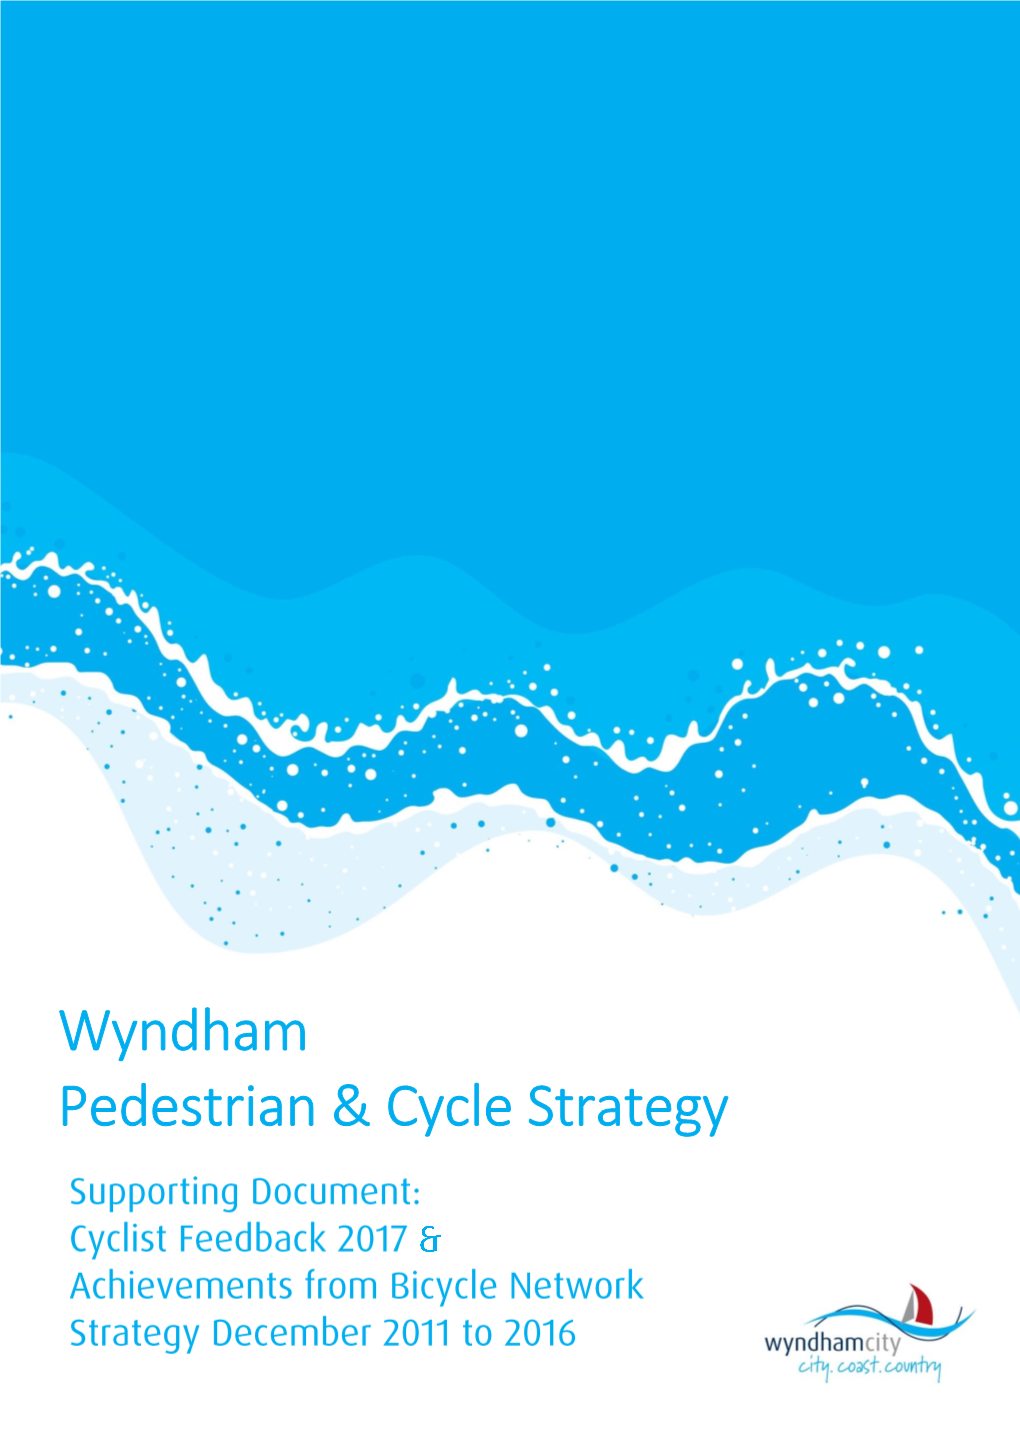 Wyndham Pedestrian & Cycle Strategy